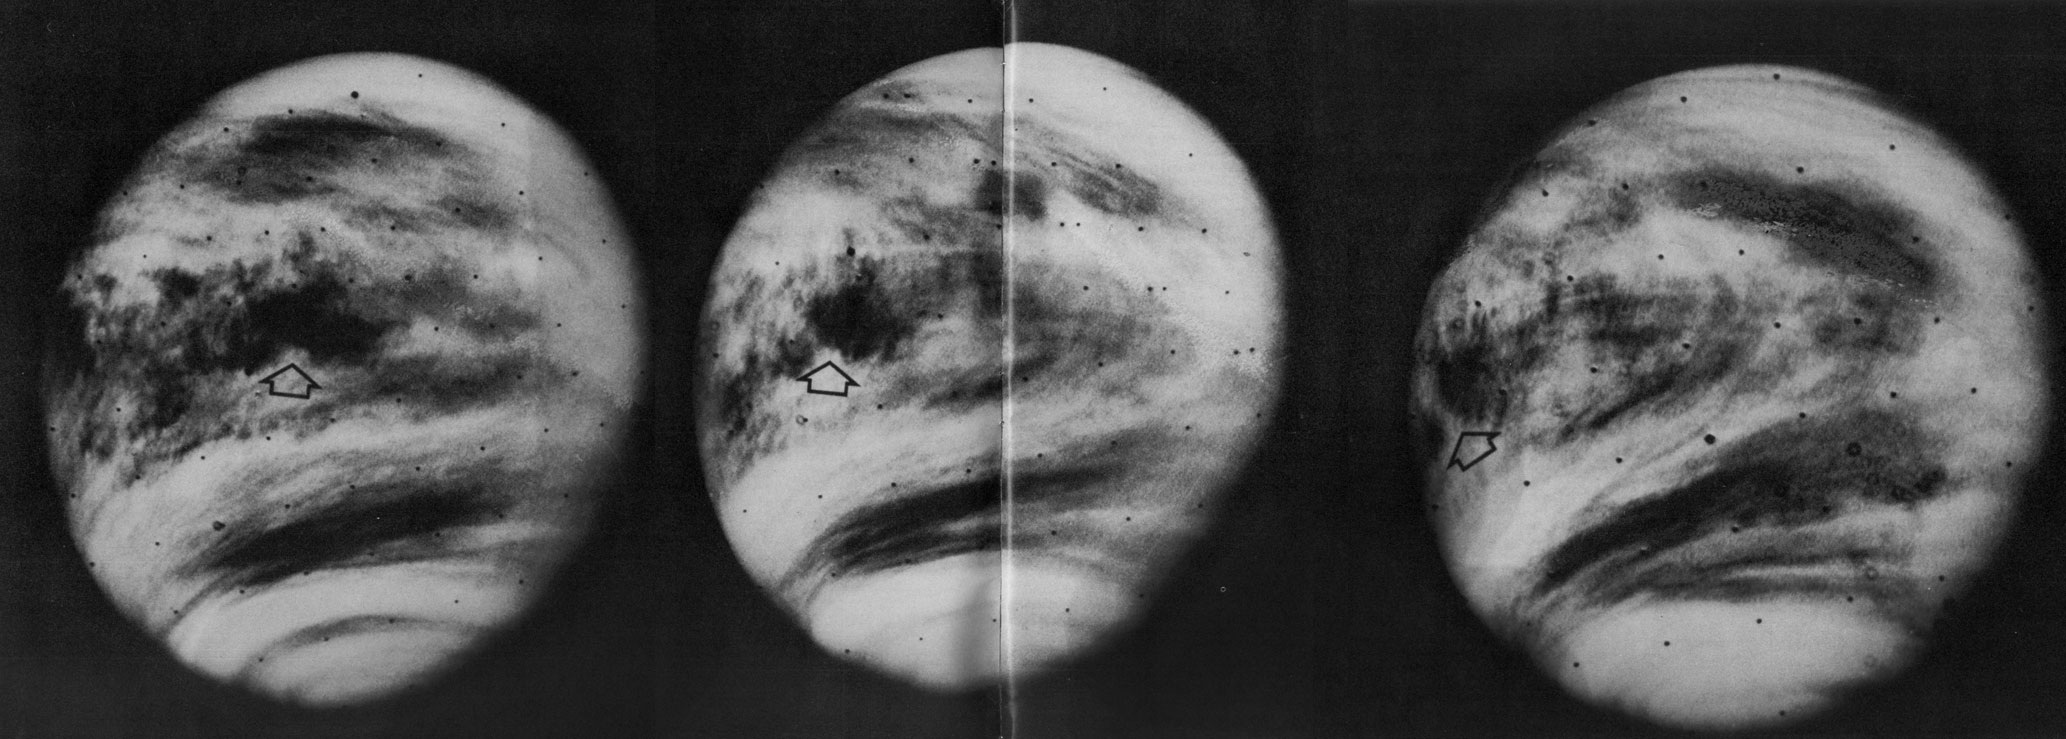 Планета Венера Маринер 10